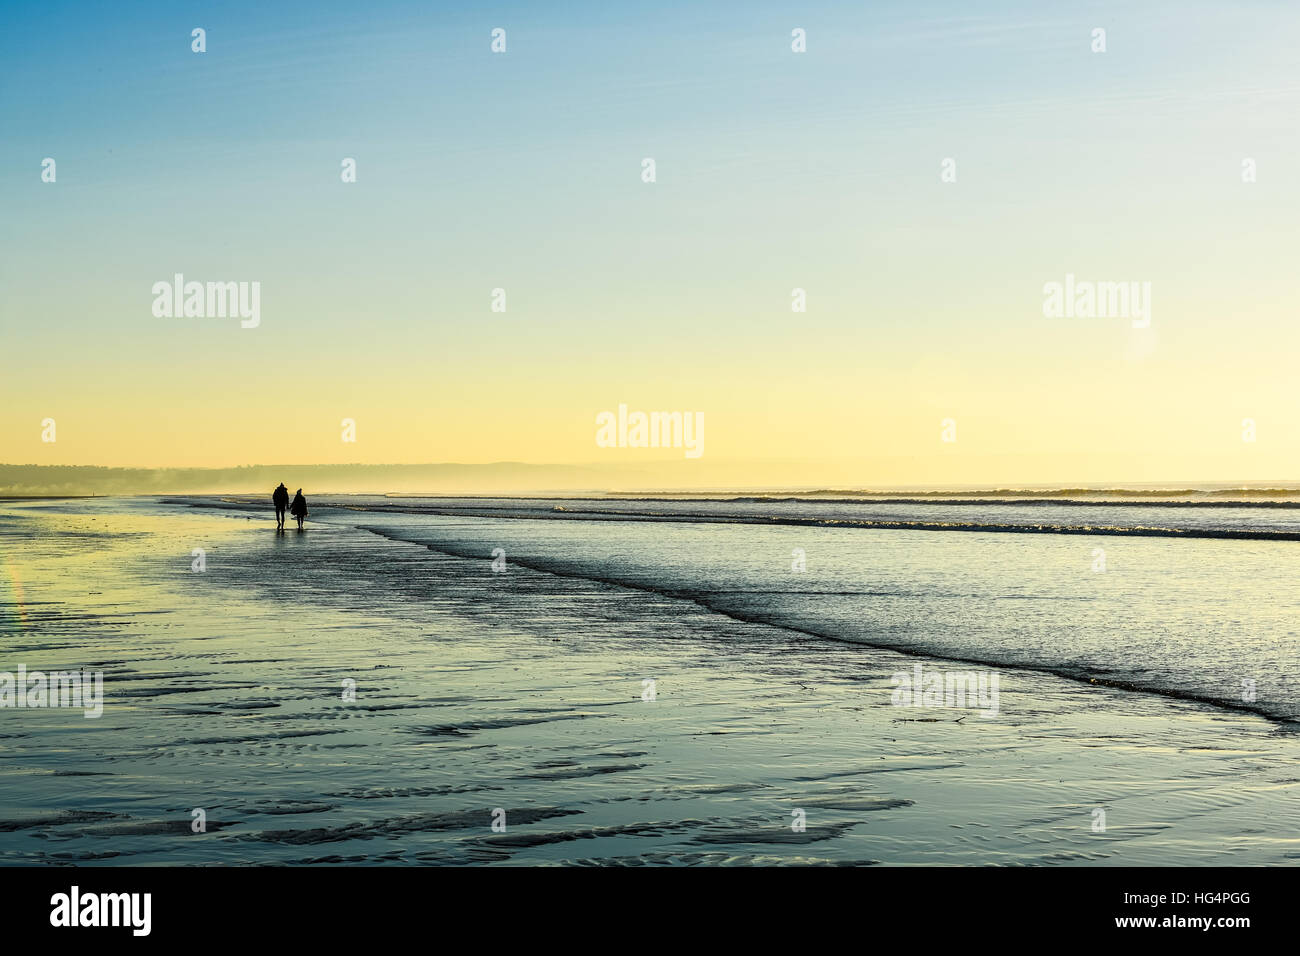 Una giovane coppia in amore tenendo le mani su una spiaggia al tramonto. Foto Stock